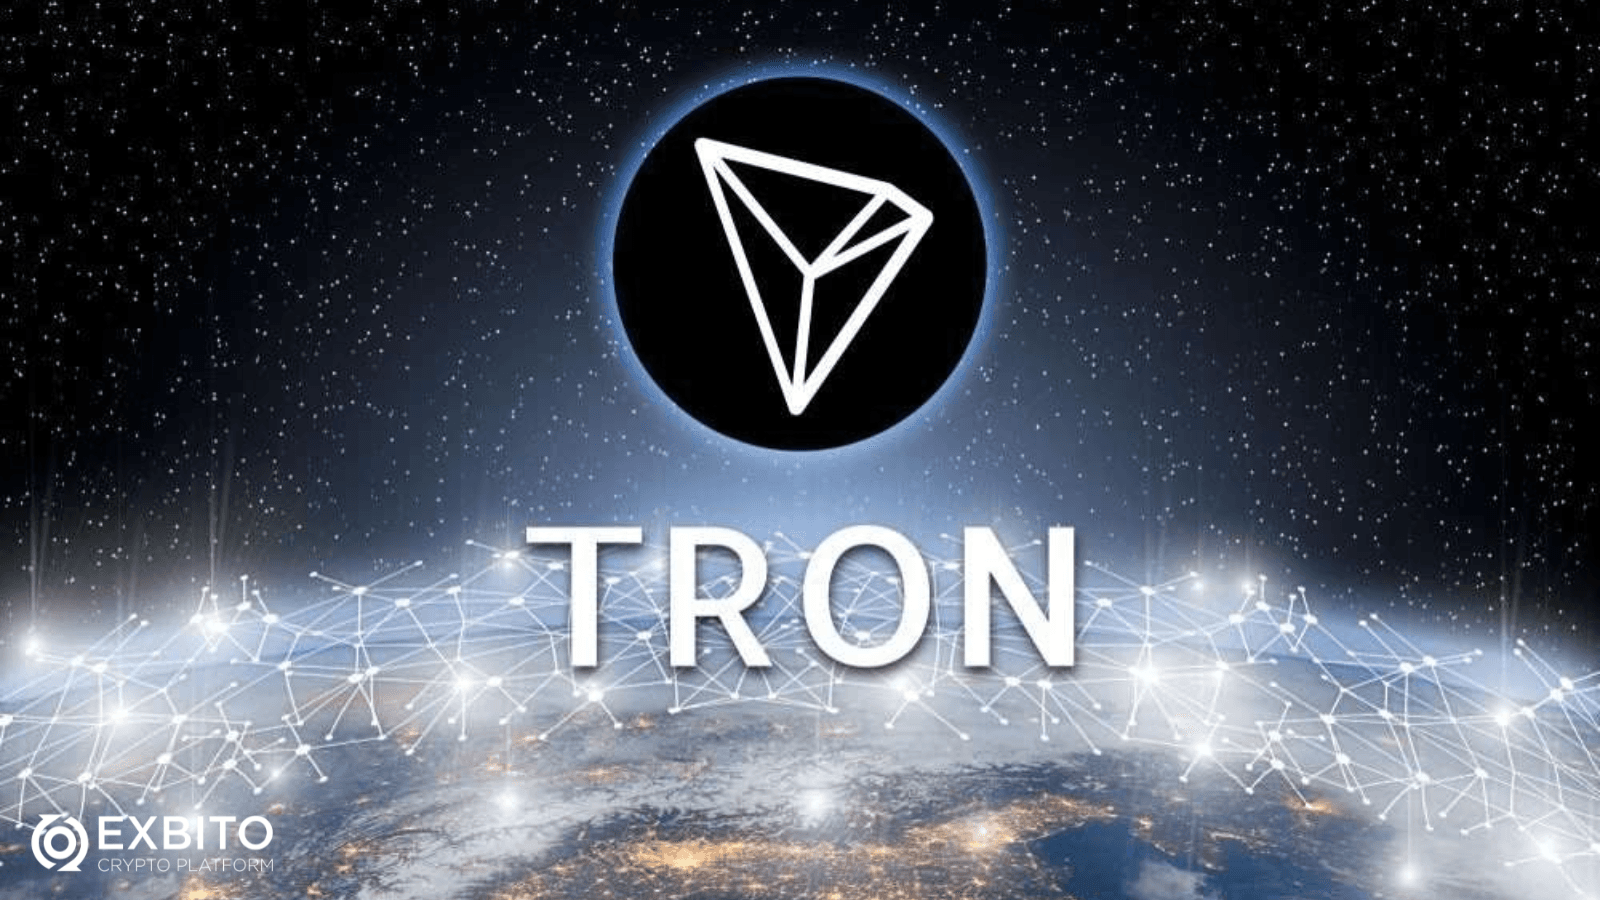 شبکه انتقال ترون (Tron)